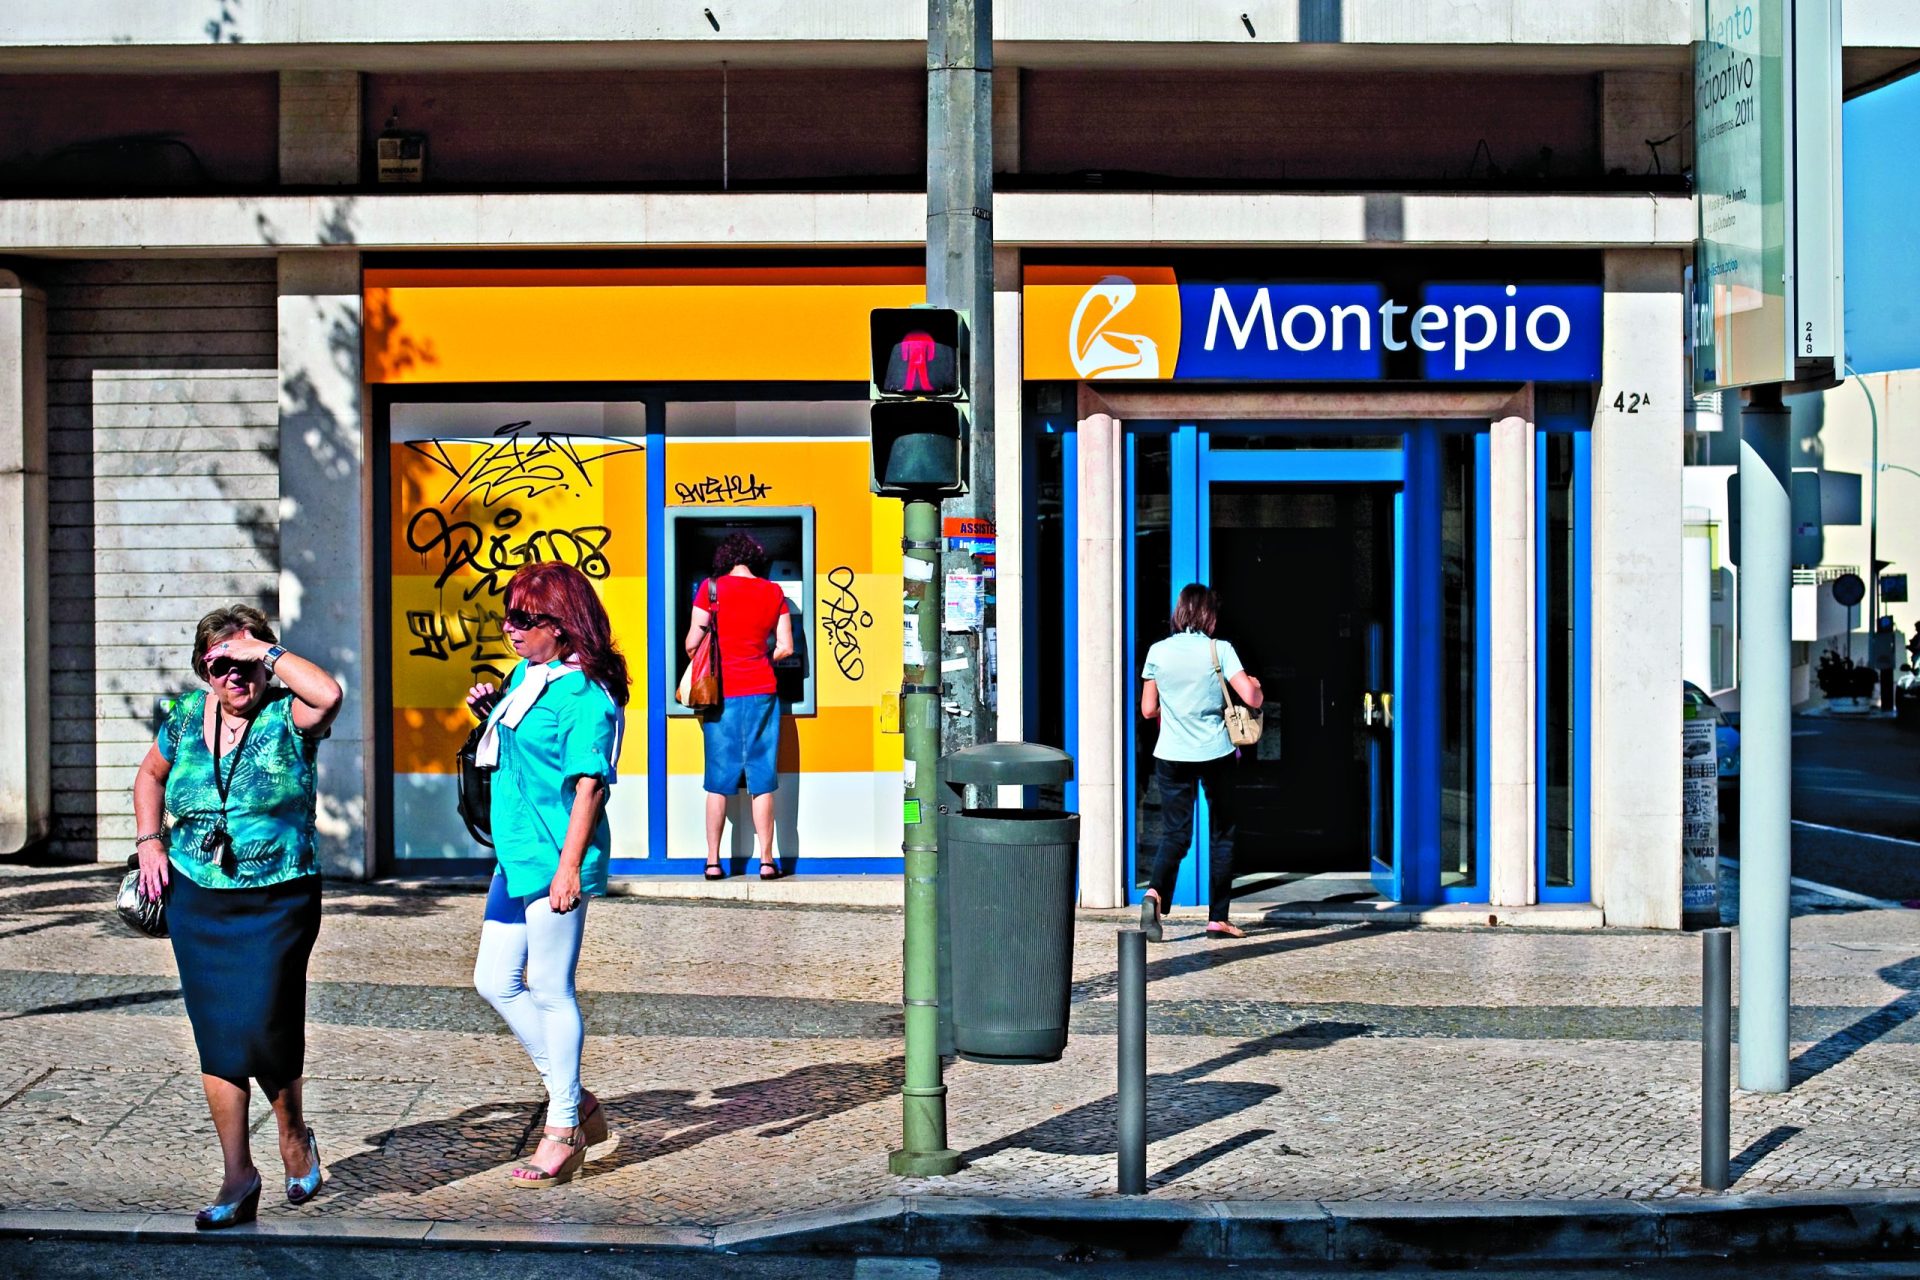 Montepio. Banco muda de nome e volta a estar envolvido em polémica